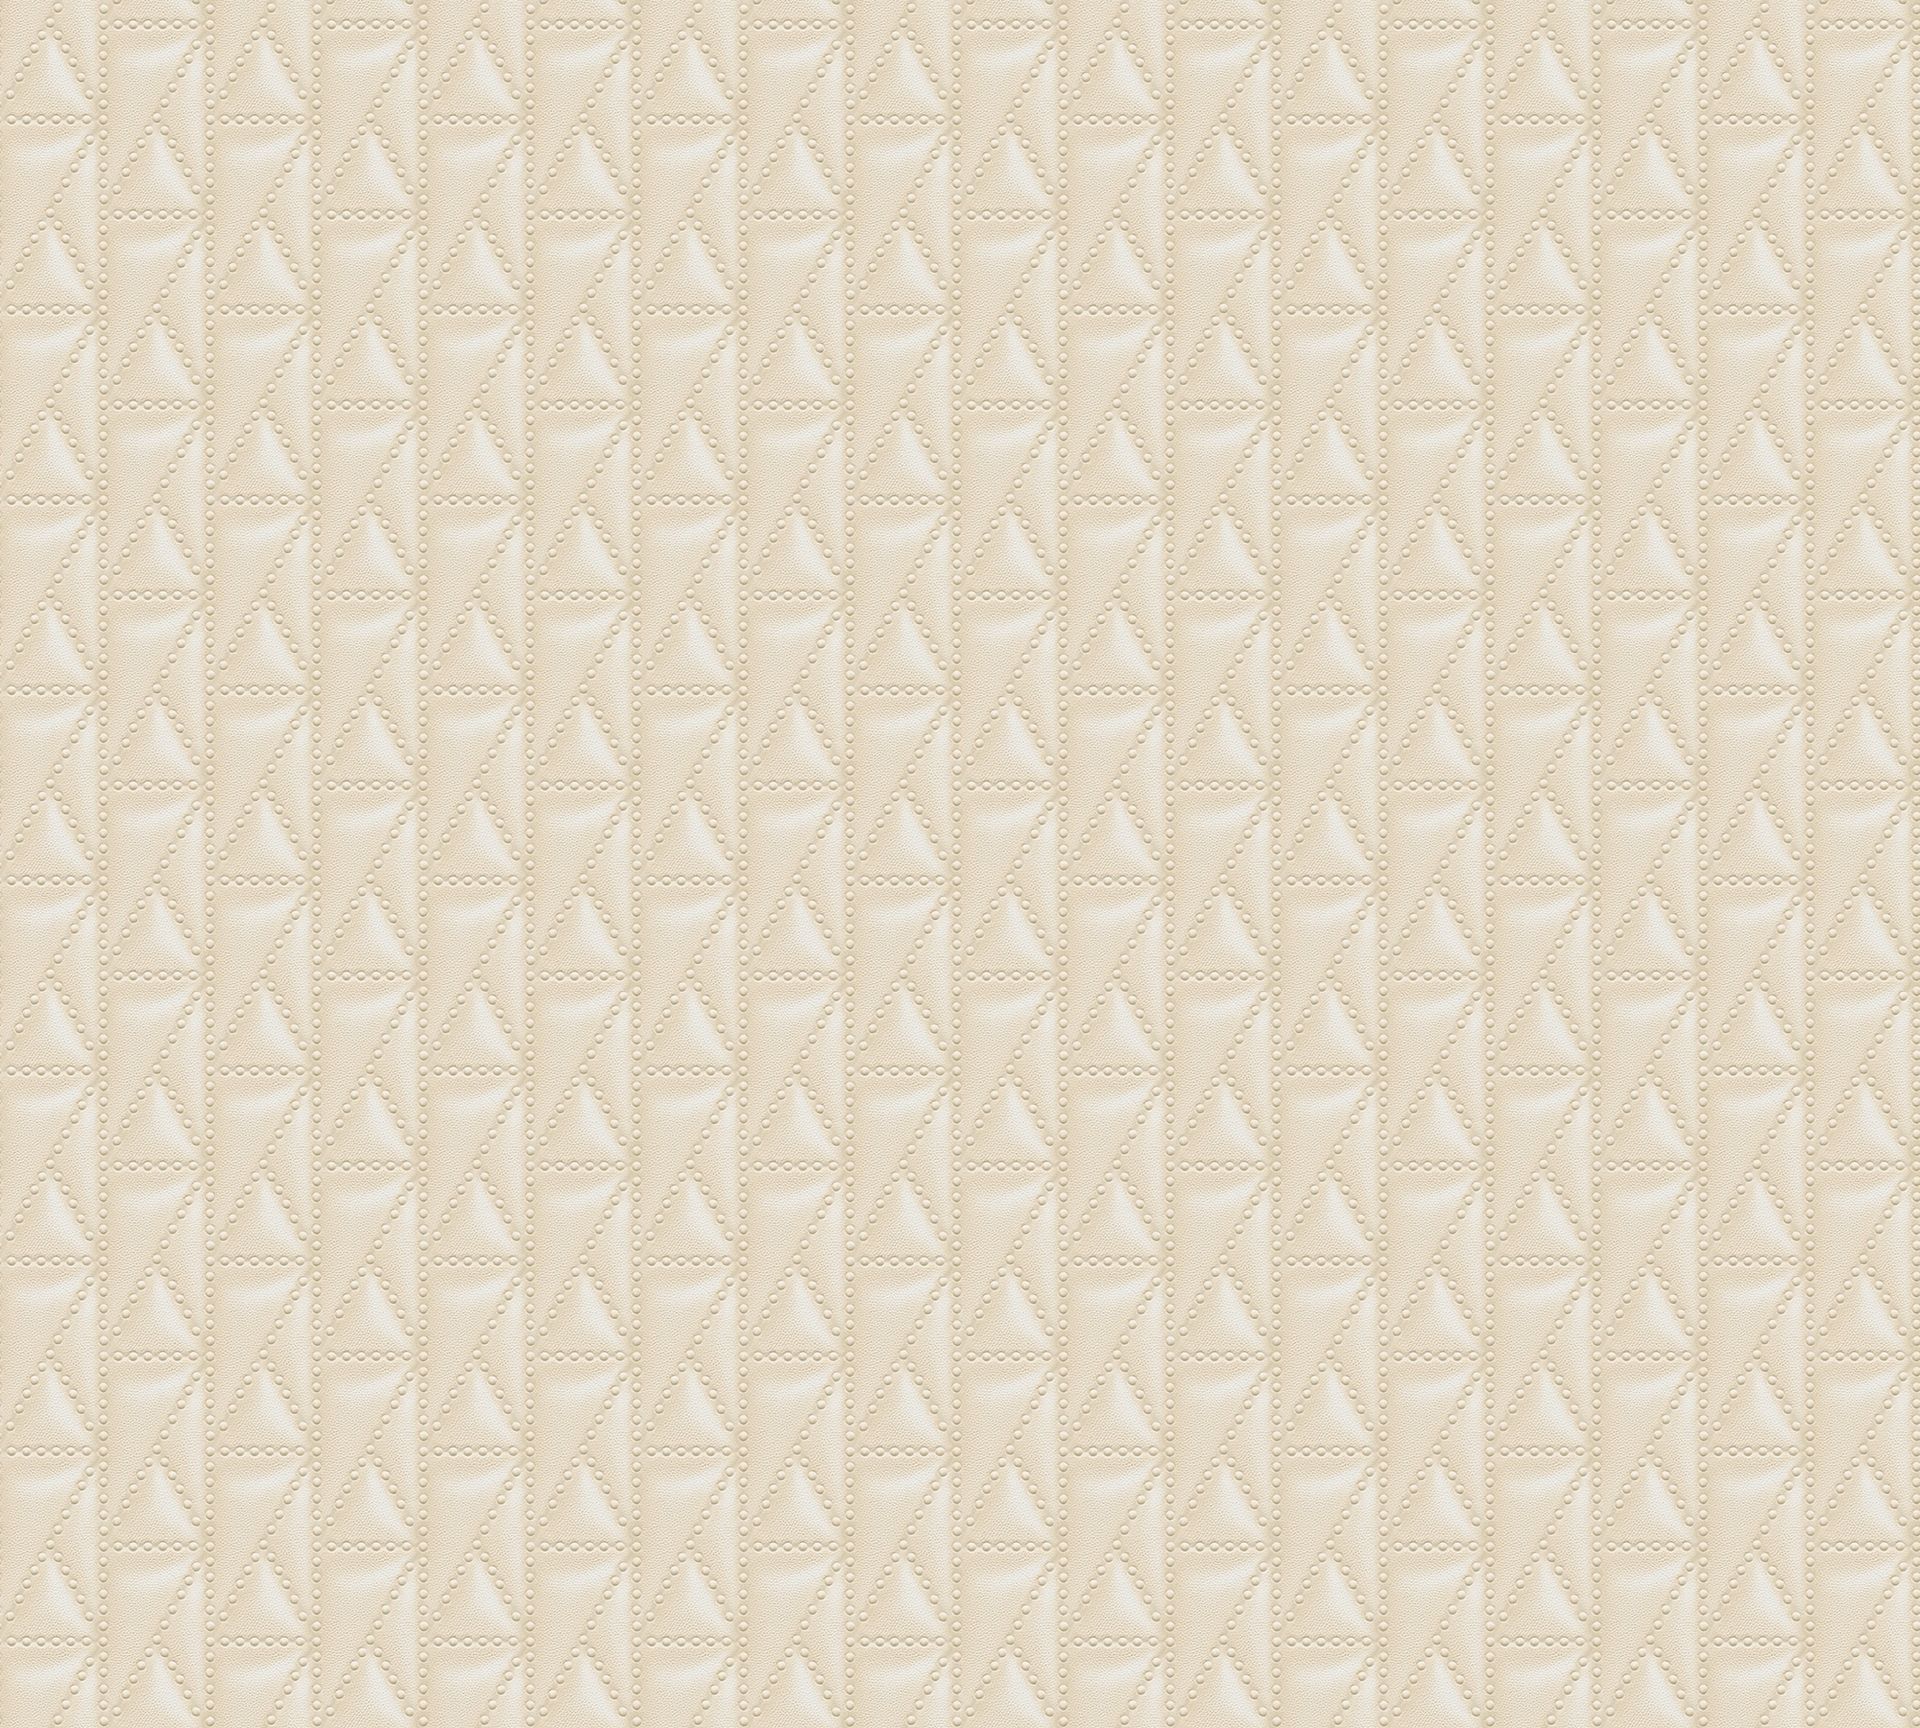 Karl Lagerfeld, Design Tapete, beige, creme 378441